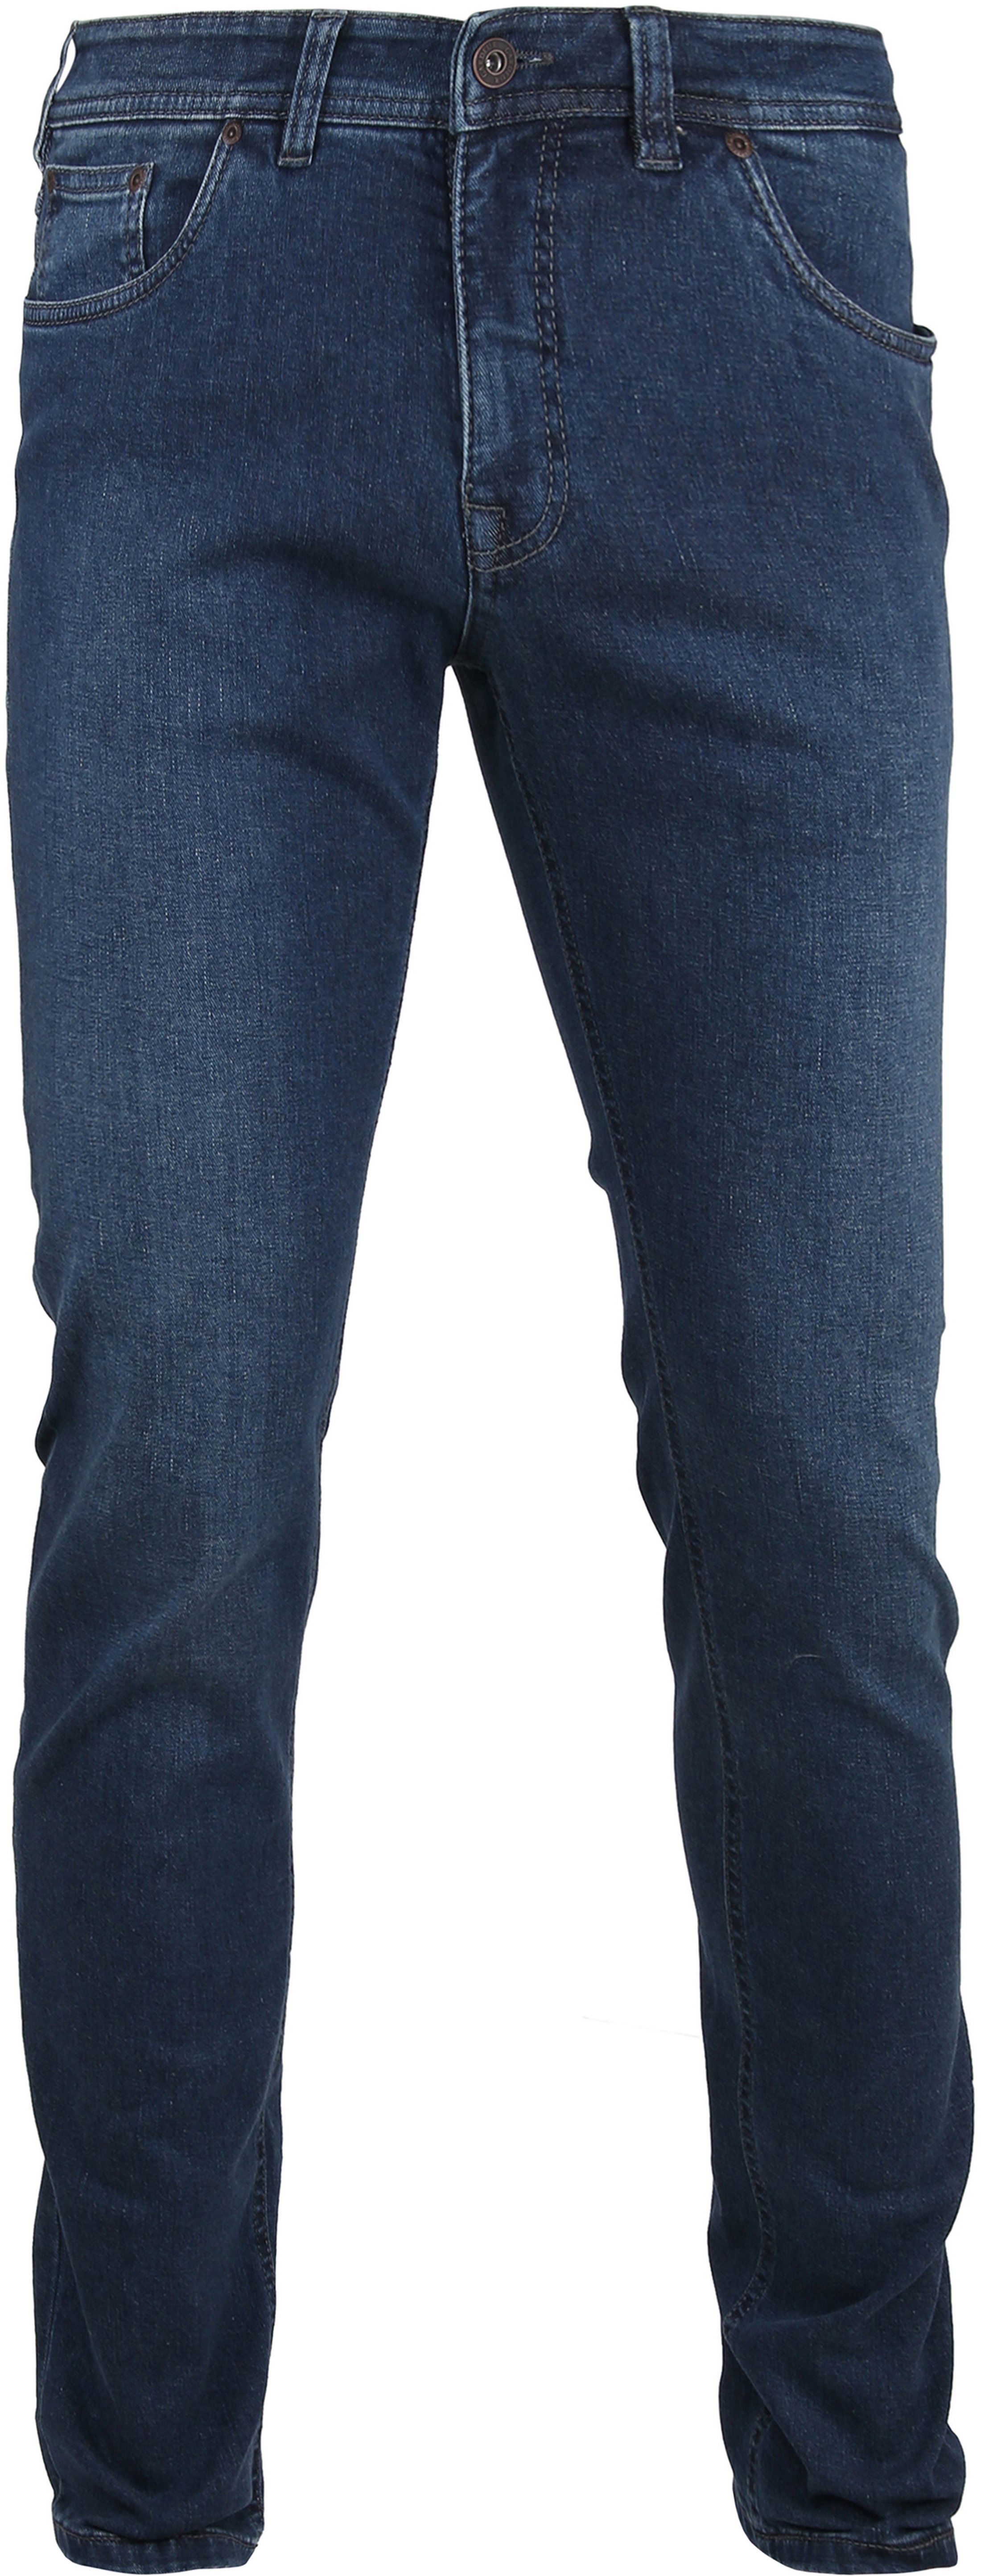 Gardeur Sandro Jeans Blue size W 31